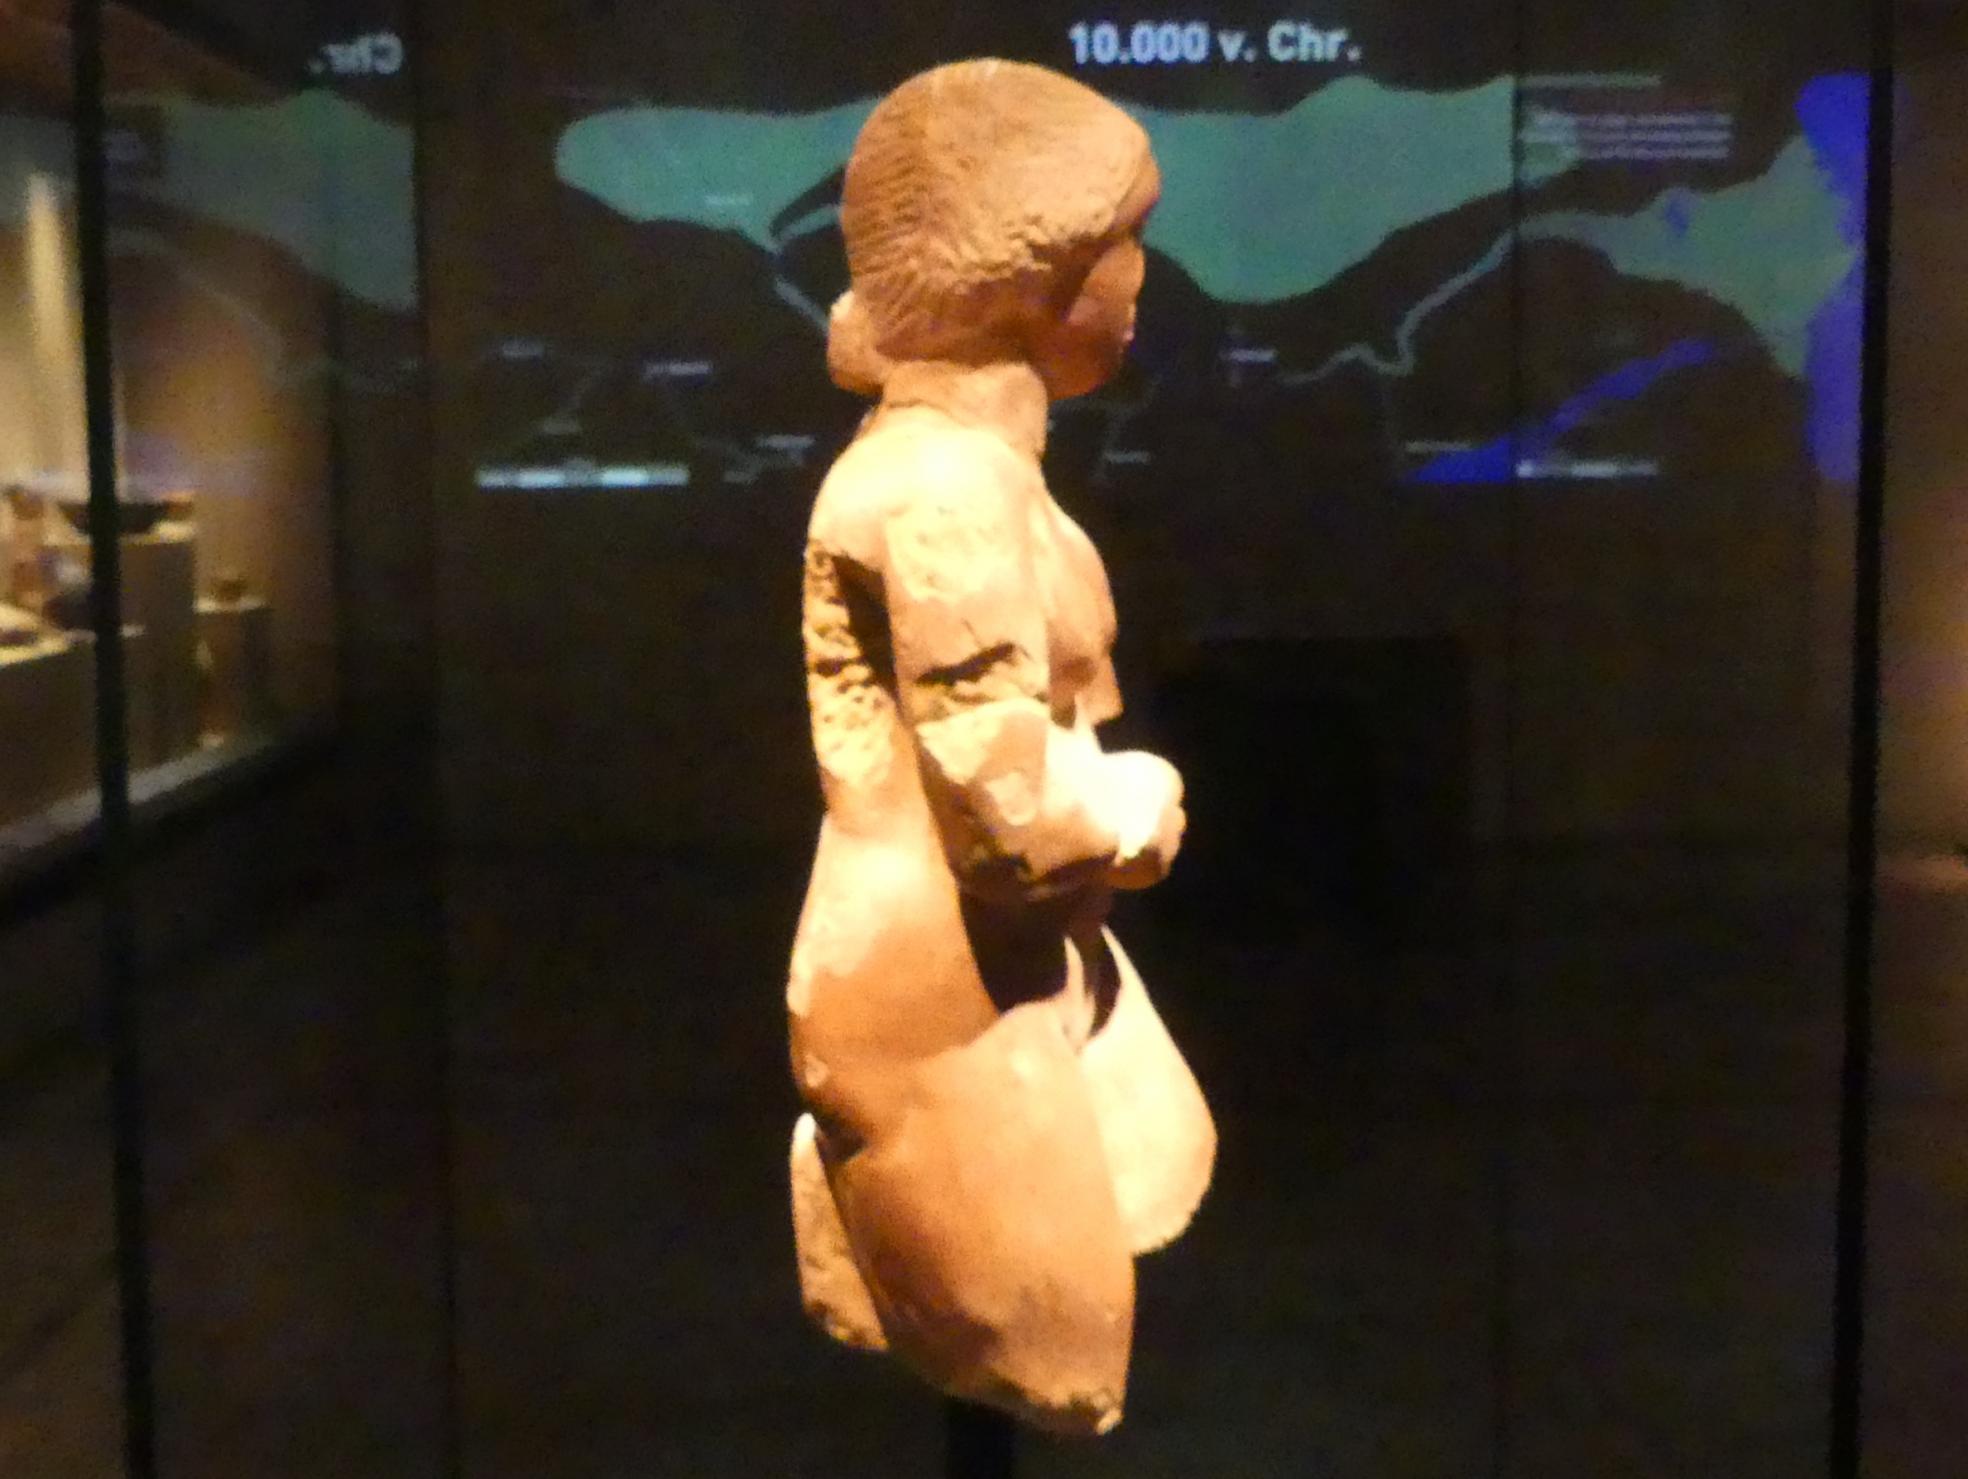 Standfigur einer Frau ("Meroitische Venus"), Meroitische Zeit, 200 v. Chr. - 500 n. Chr., 100 - 300, Bild 2/4